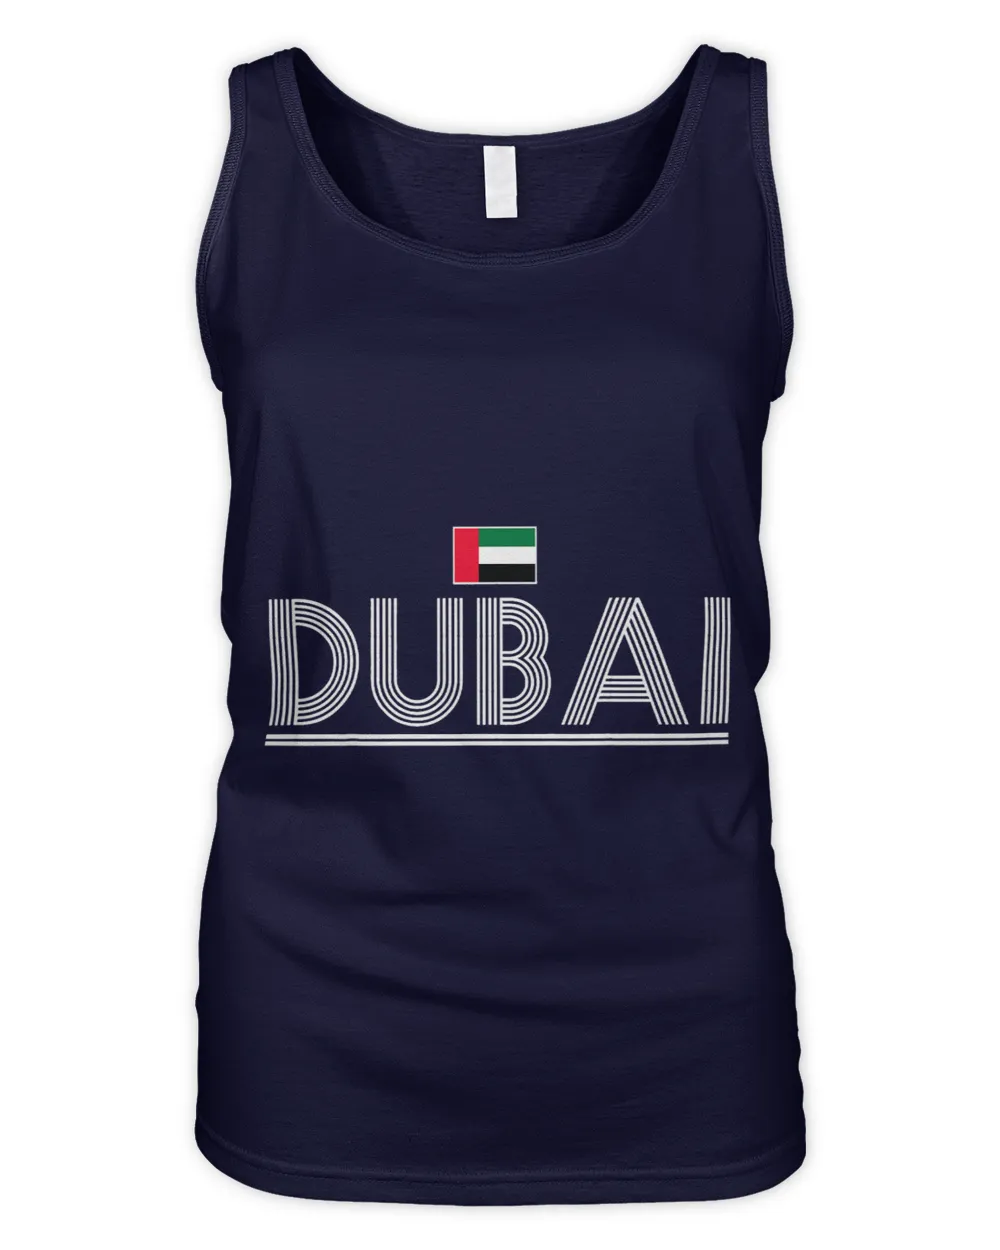 Dubai 1